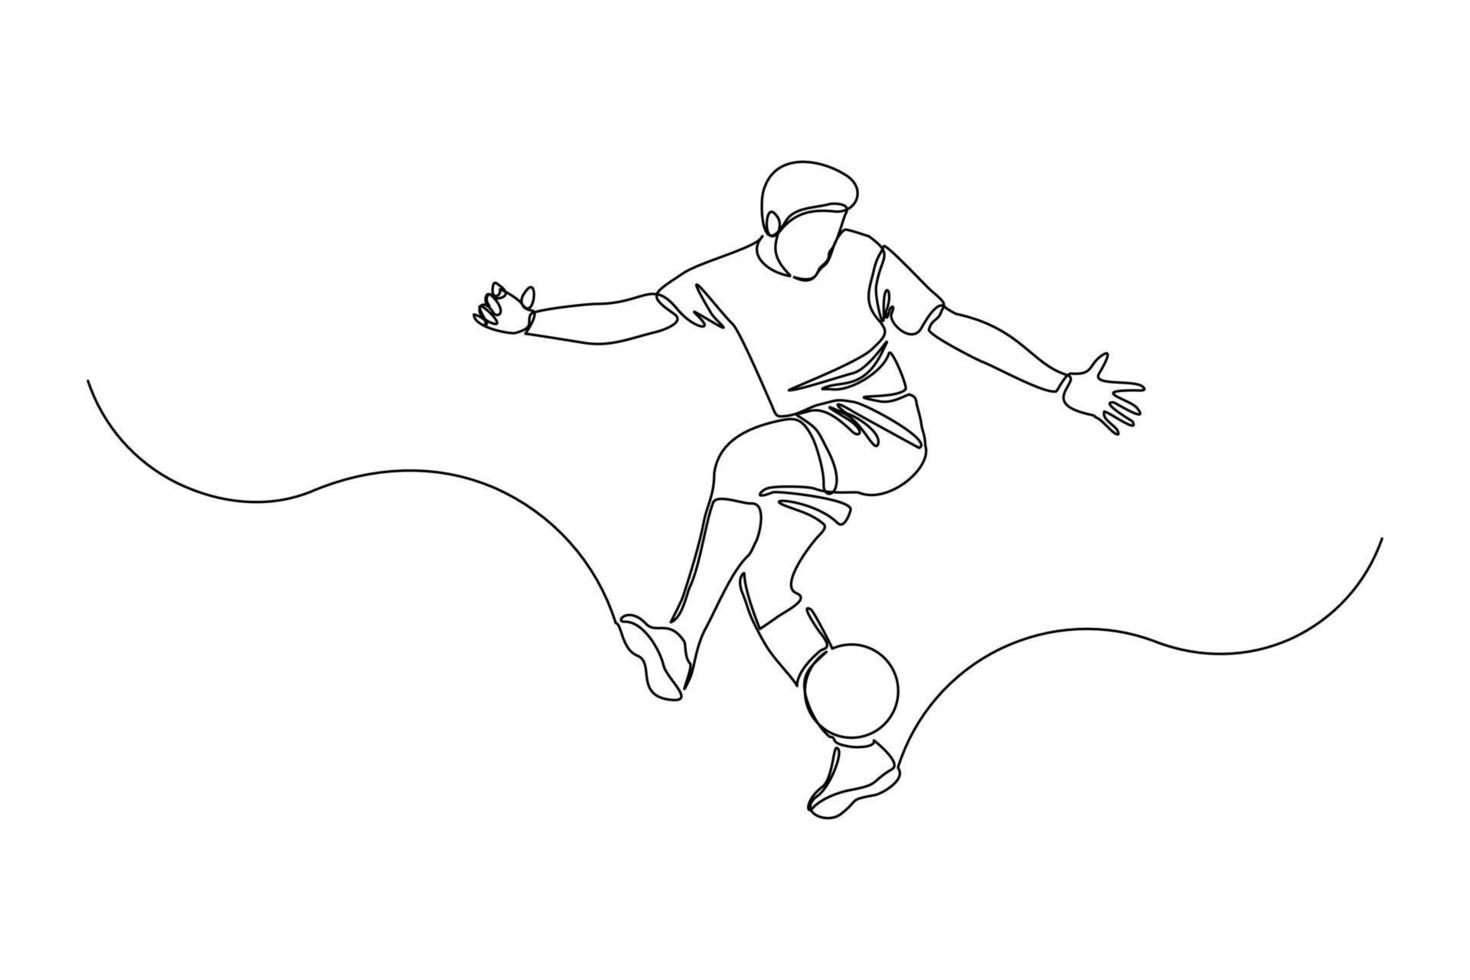 dessin en ligne continu d'un joueur de football qui donne un coup de pied au ballon. dessin au trait unique d'un jeune homme joueur de football dribble et jongle avec le ballon. illustration vectorielle vecteur